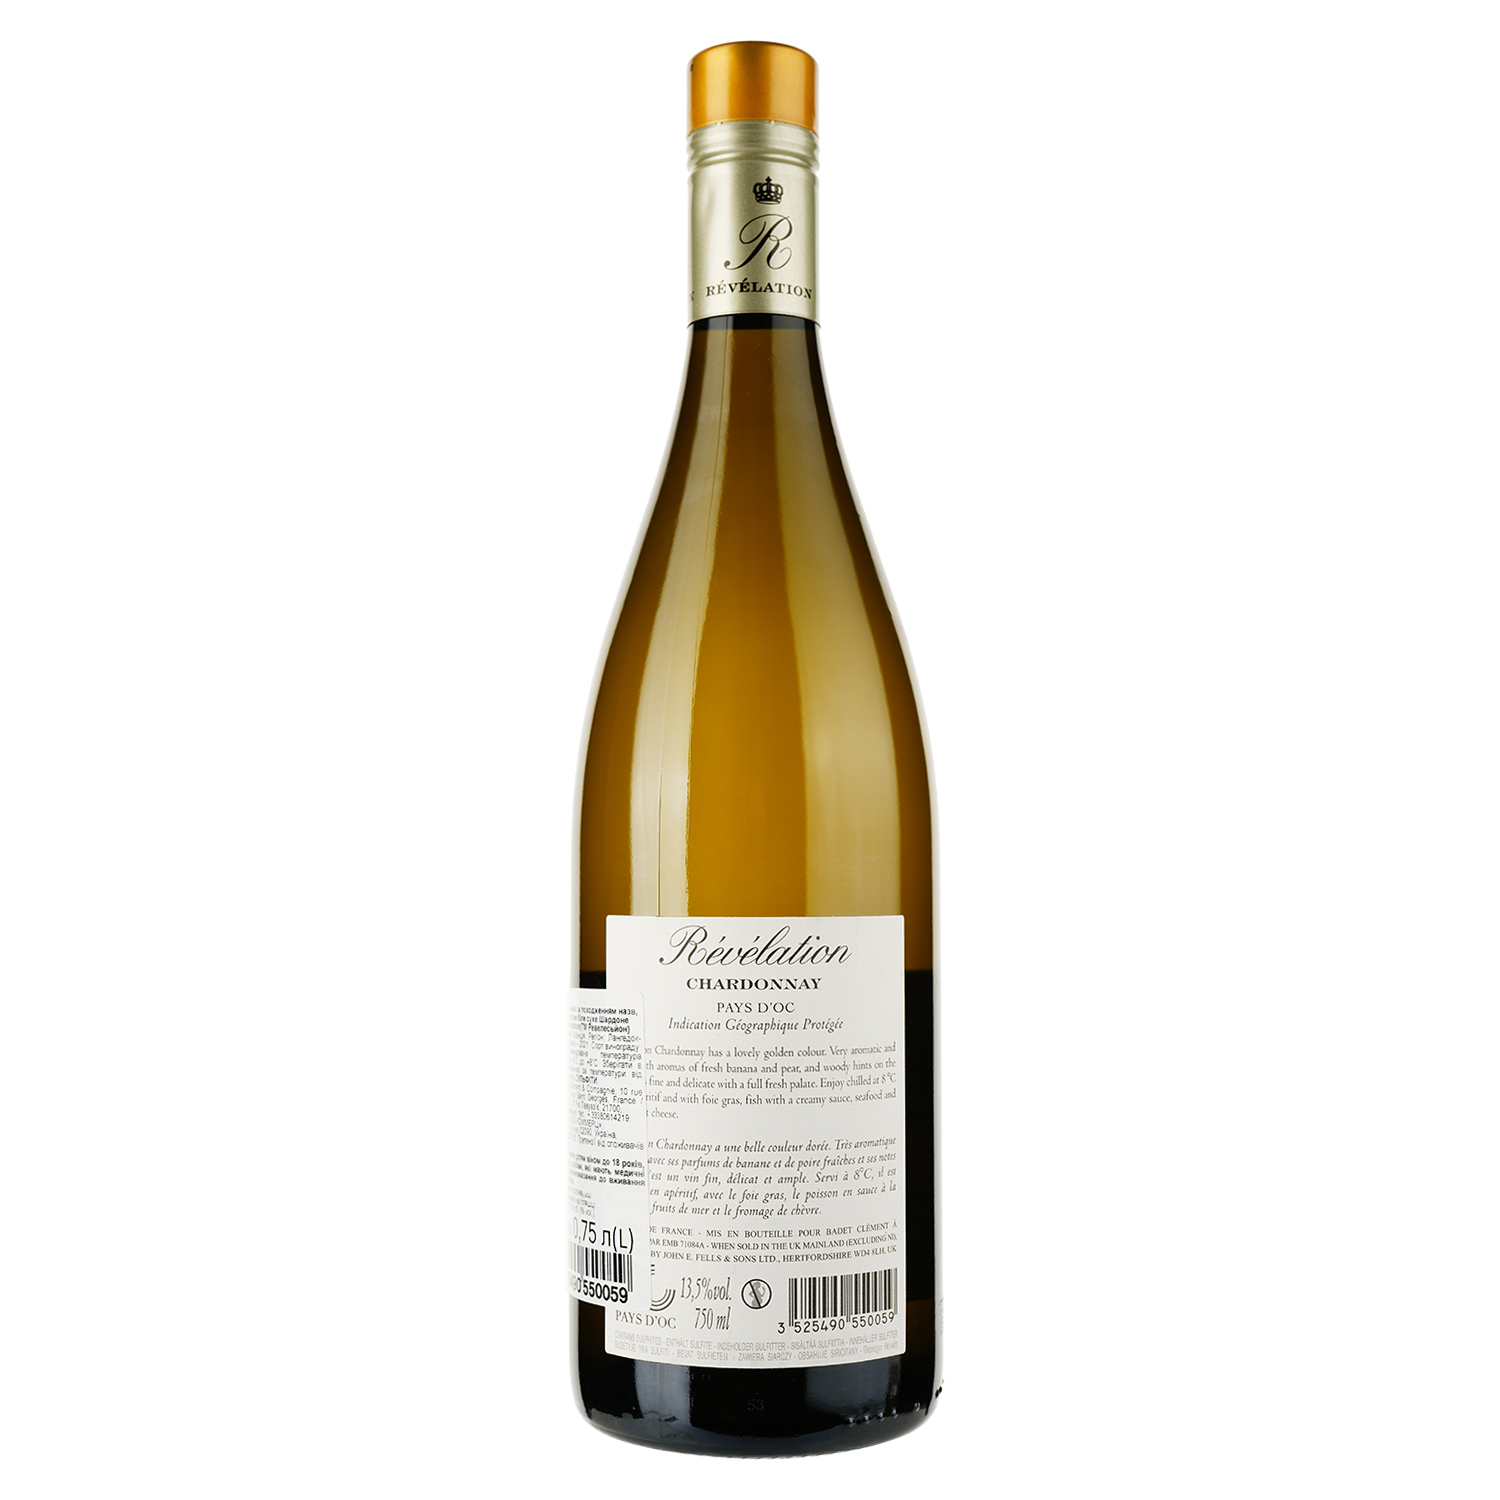 Вино Badet Clement Revelation Chardonnay Pays d'Oc, белое, сухое, 0,75 л - фото 2